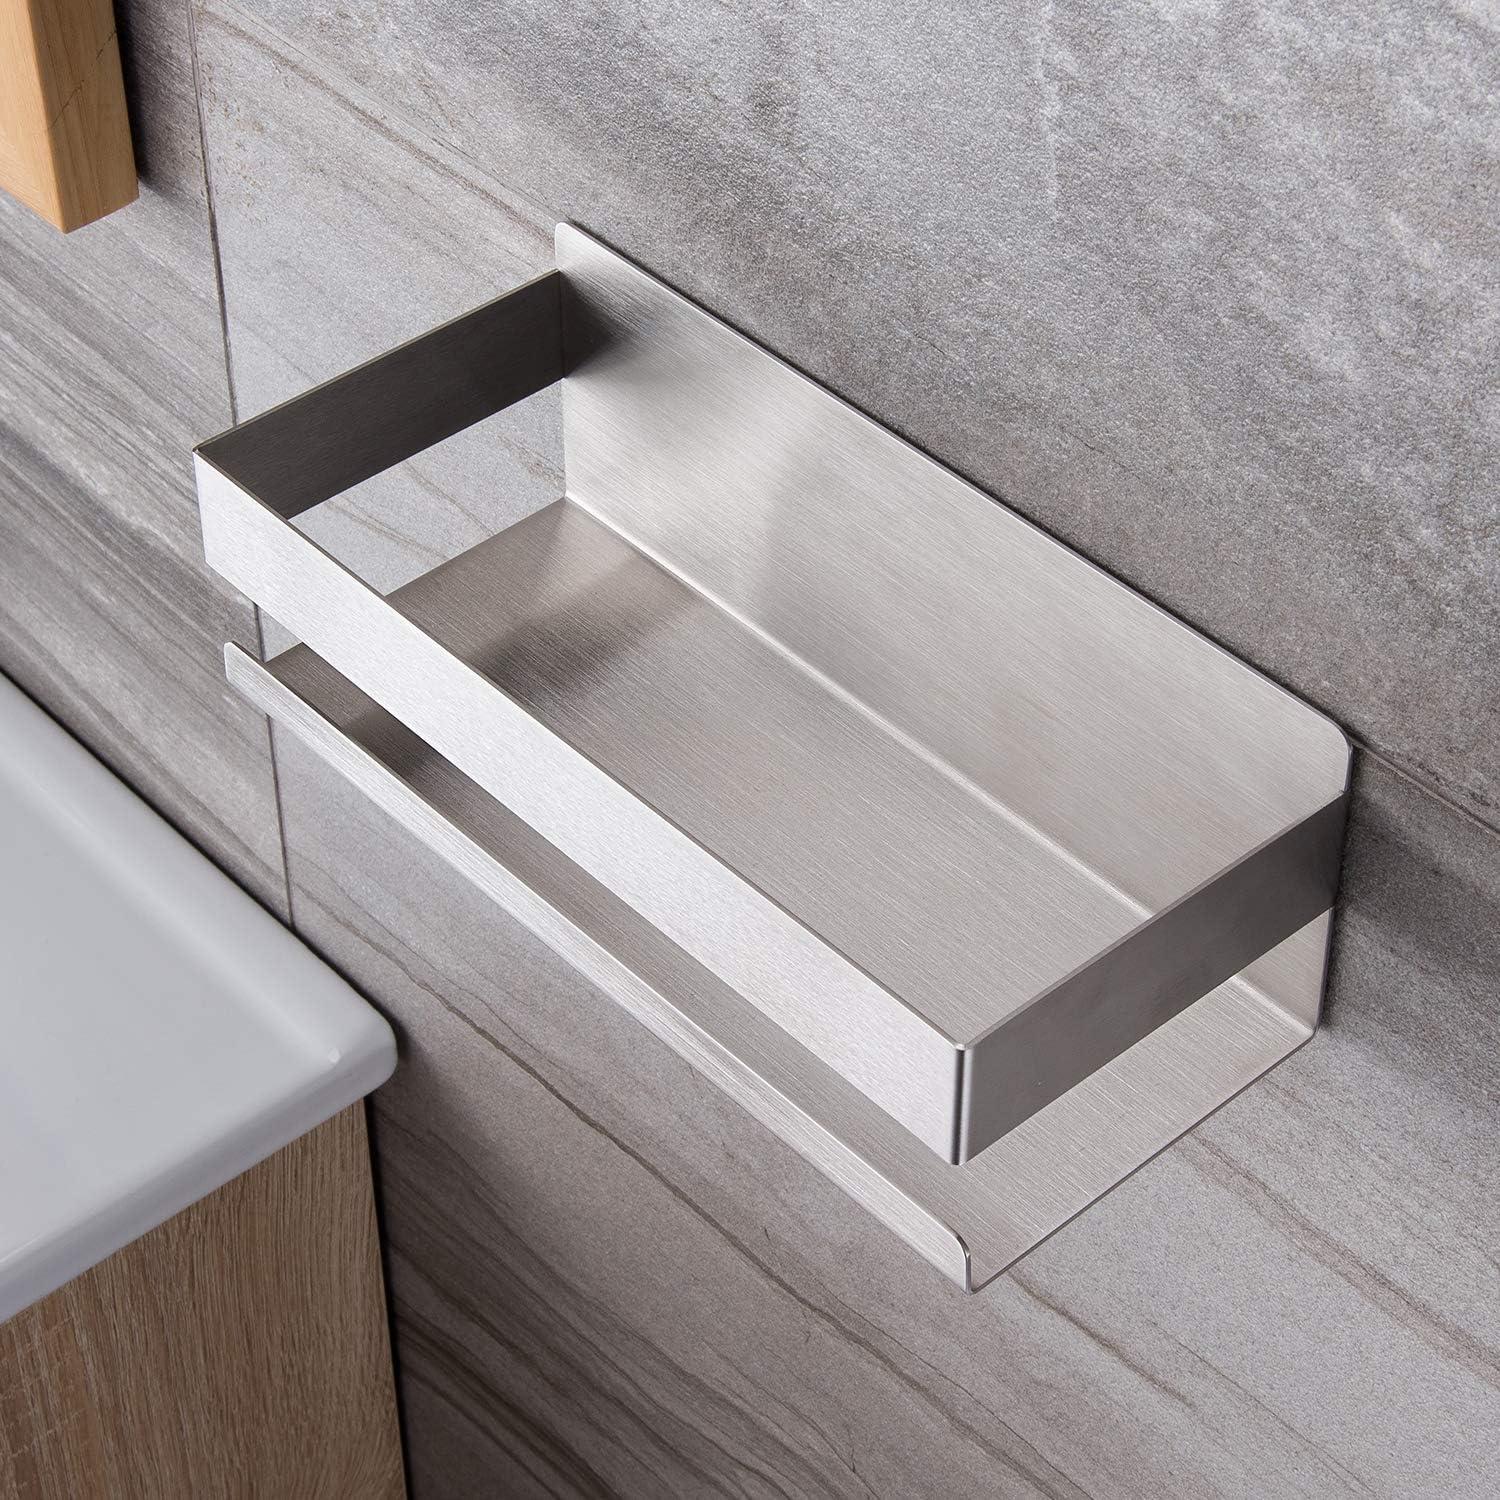 Shower caddies Self-adhesive Shower Shelf Drill- Shower Basket Bathroom Shelf Stainless Steel SUS304